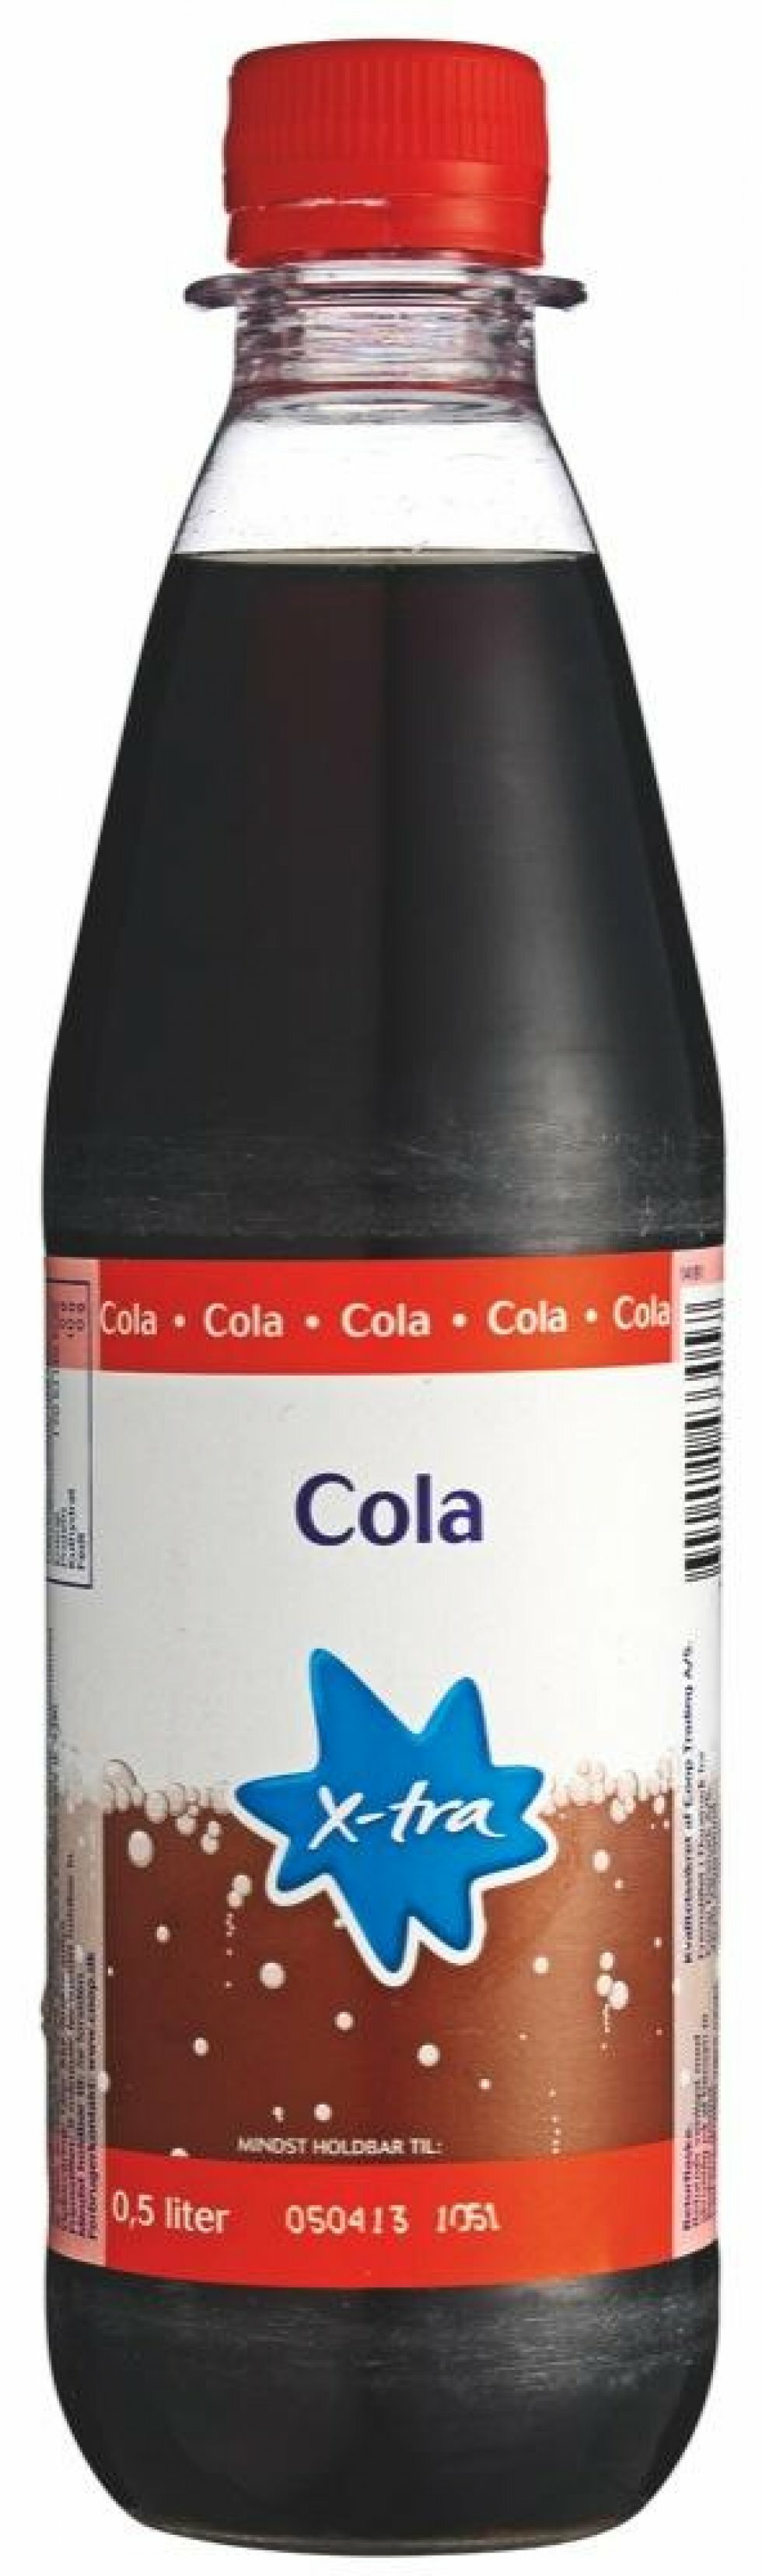 Blindtest af cola